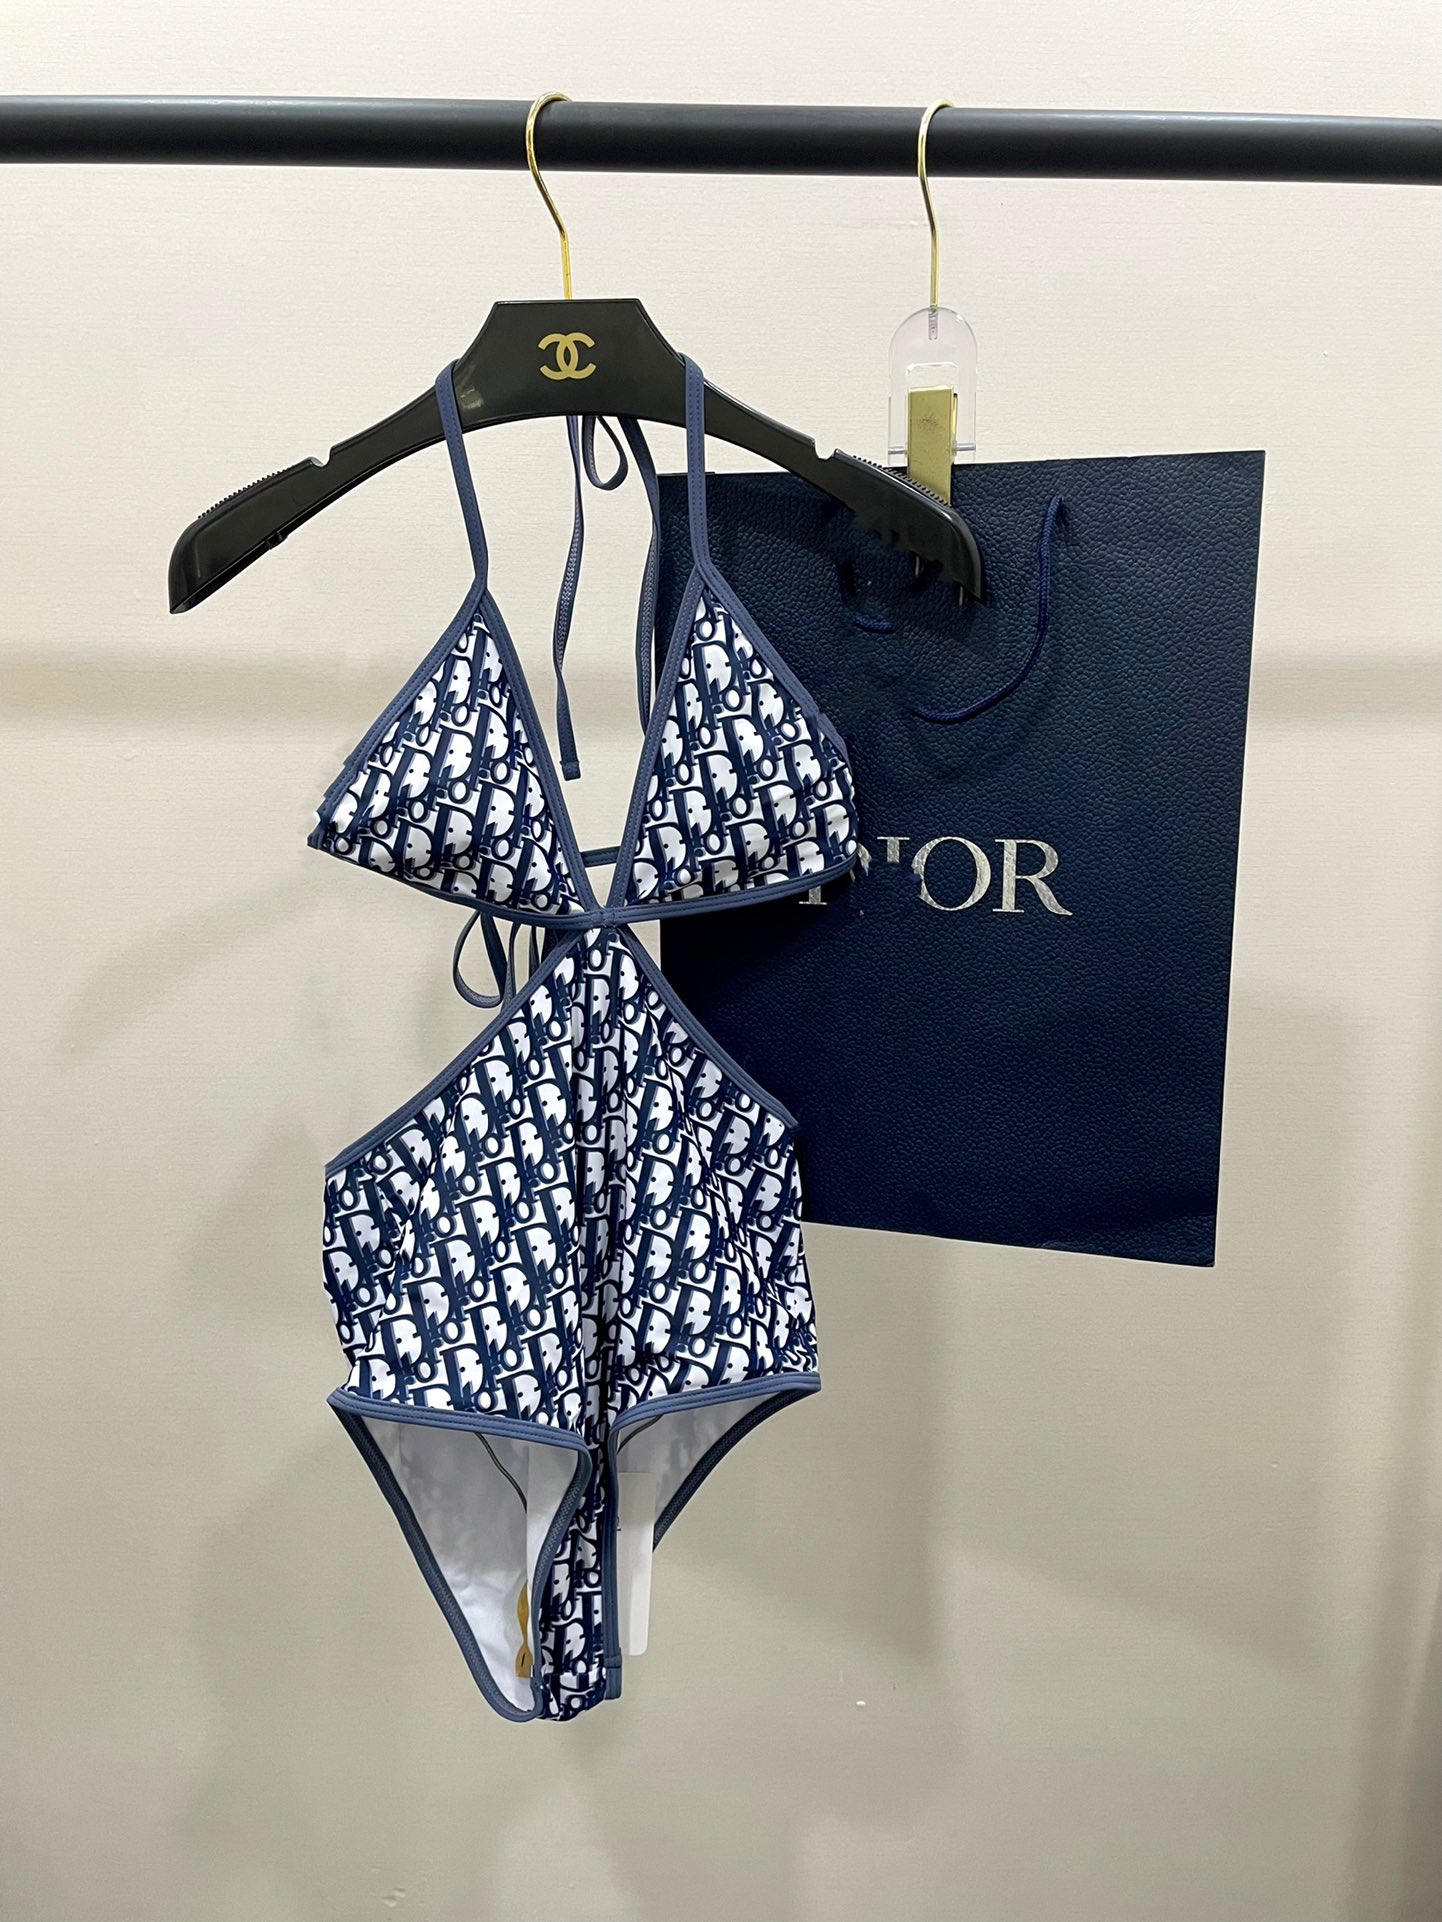 Dior新款性感连体泳衣周扬青同款适合多种场景的游泳衣️海边游泳池温泉水上乐园漂流都可以内搭也完全可以连